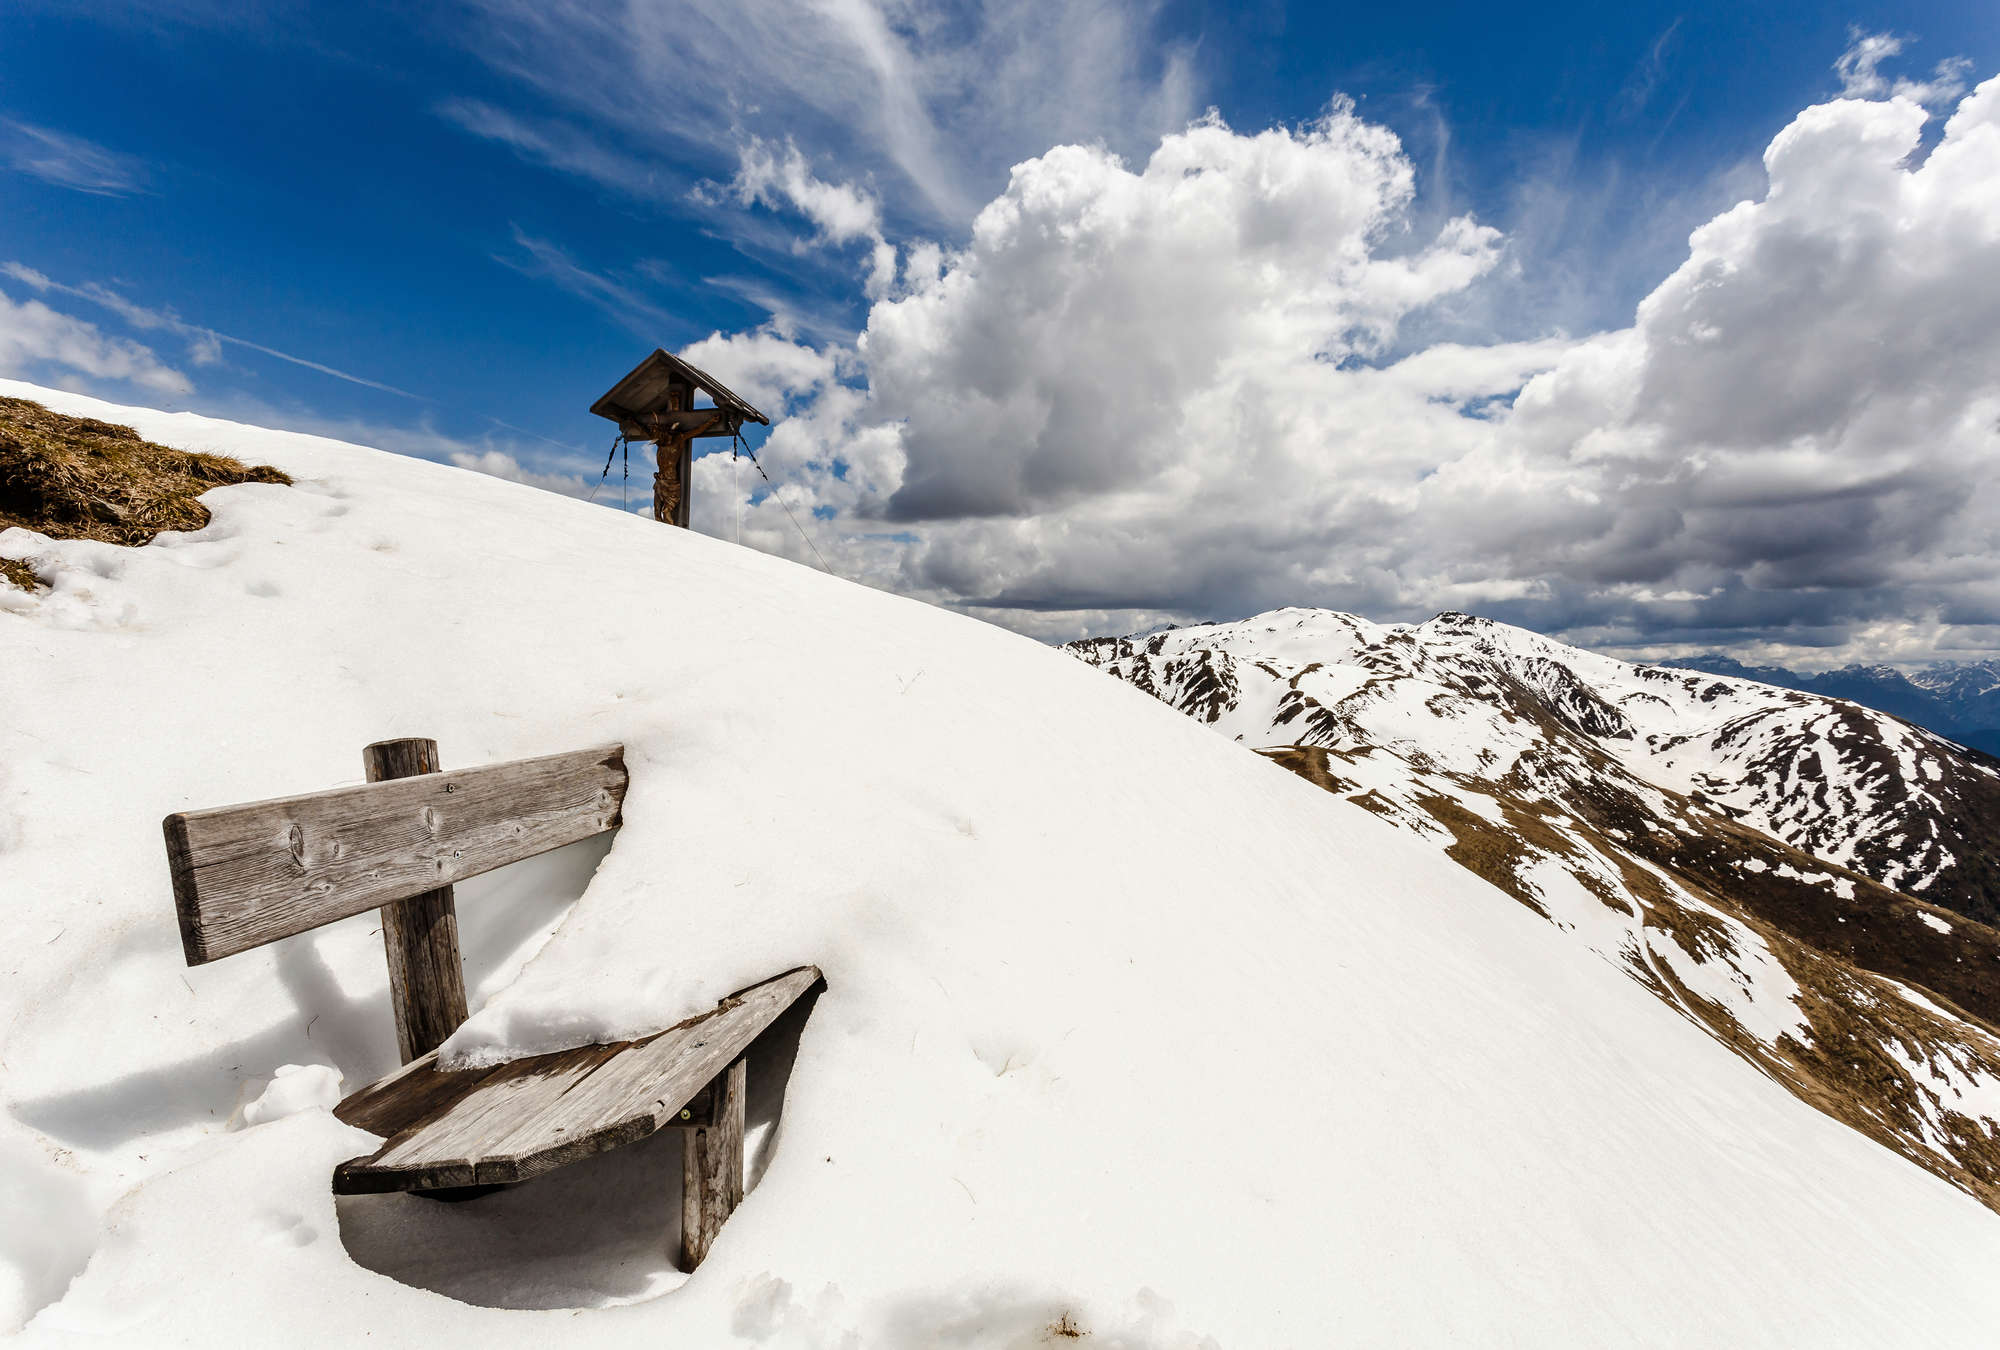             Fototapete Winterlandschaft in den Bergen – Verschneite Bank
        